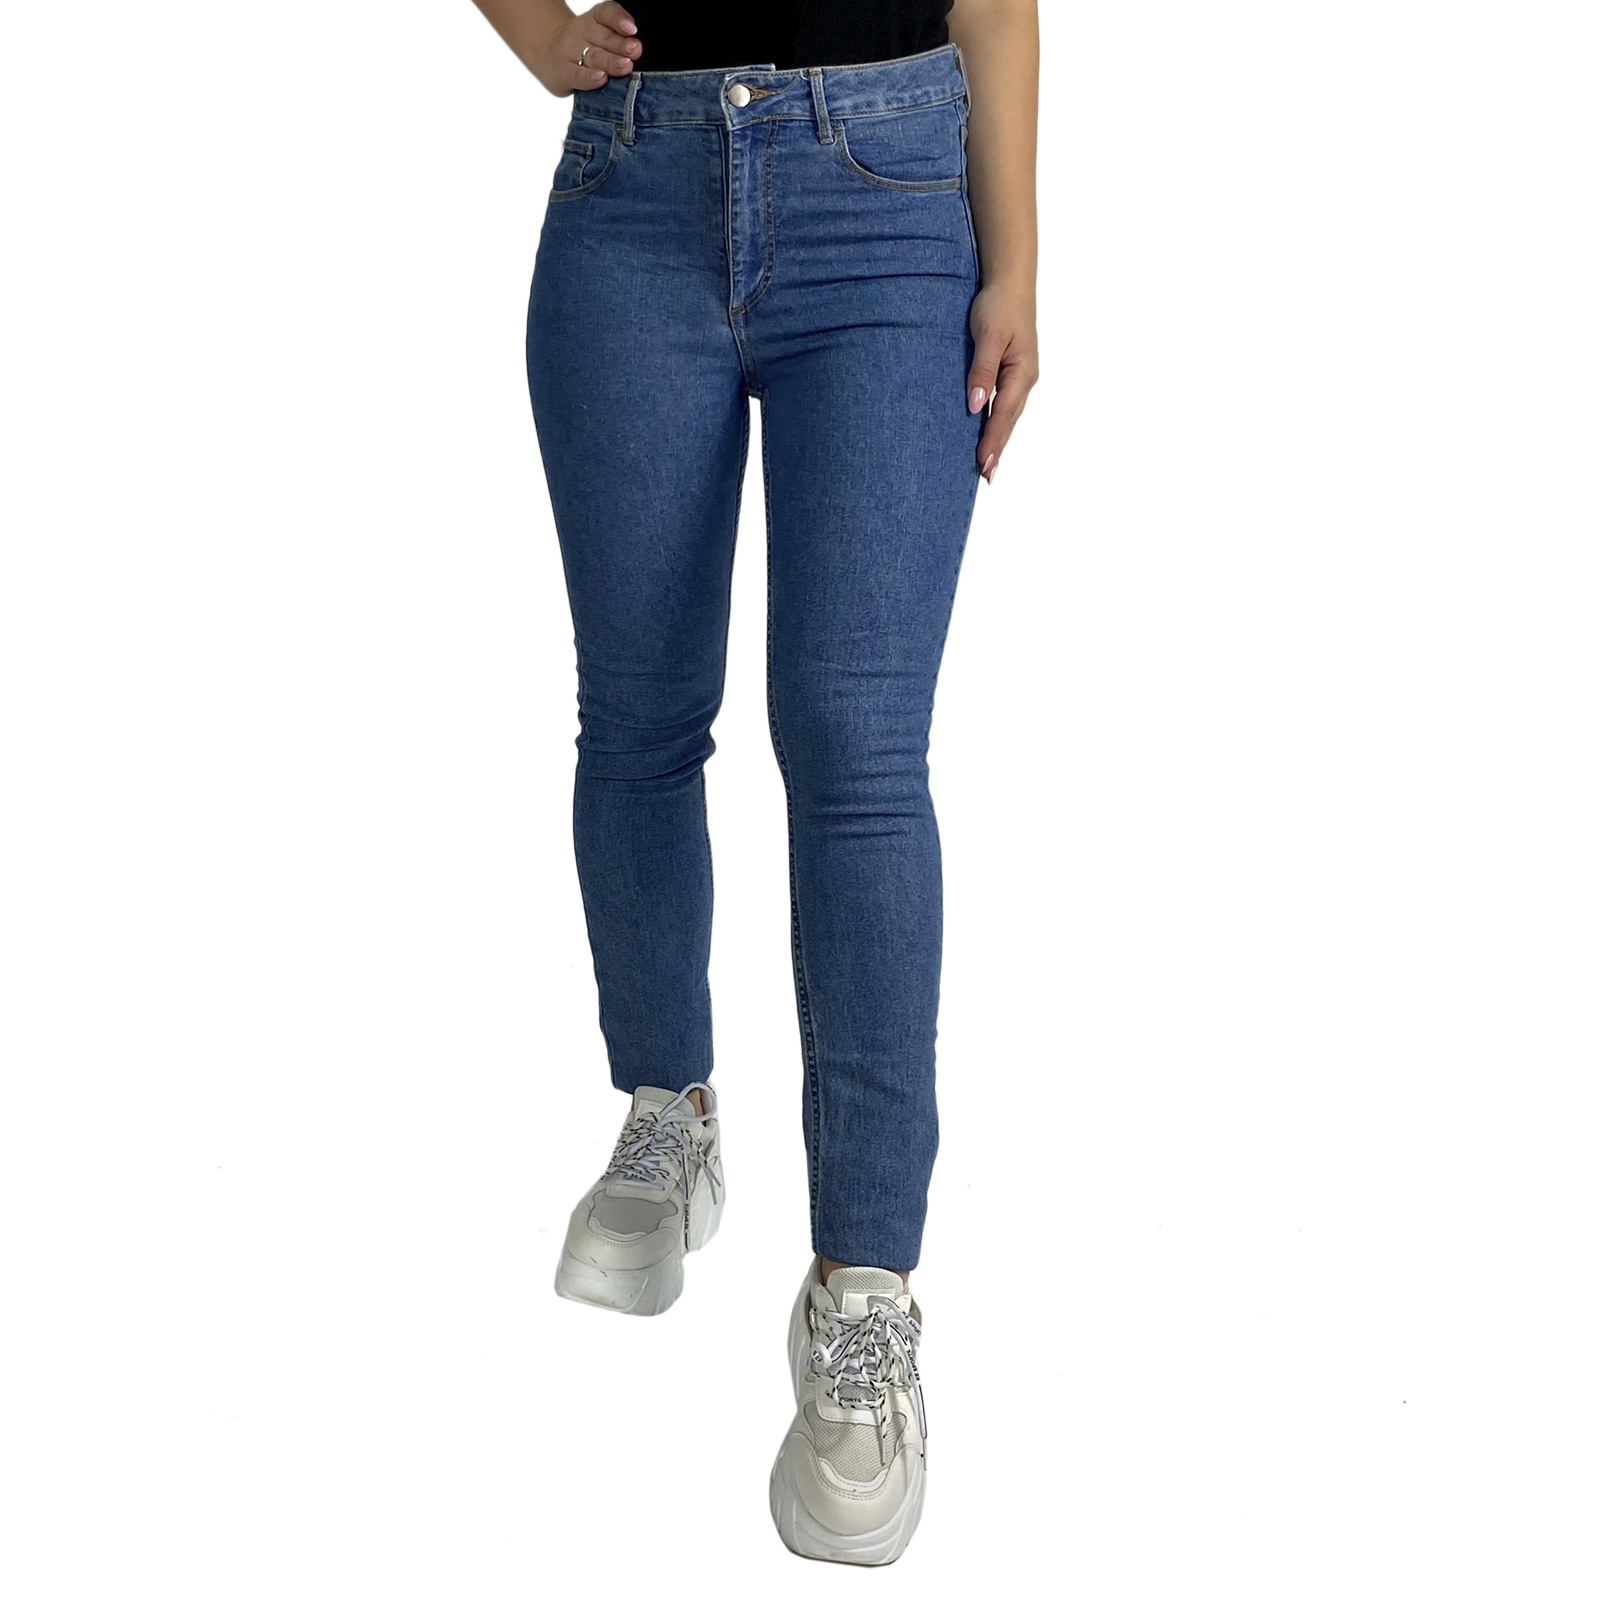 Купить недорого в интернет магазине синие женские джинсы